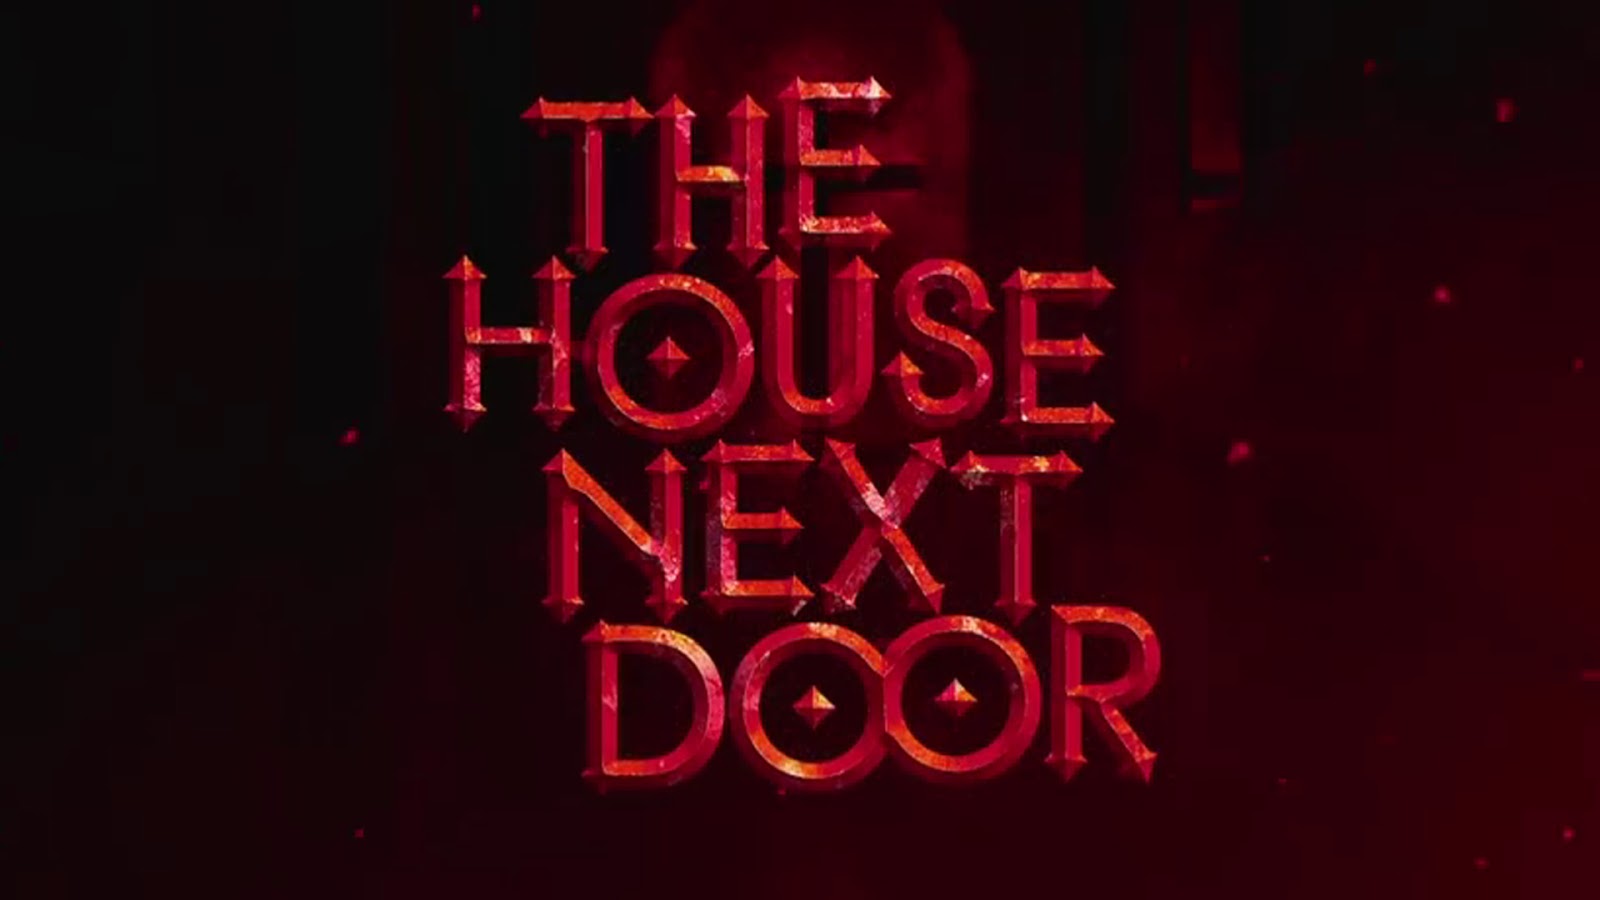 The next House Door. The House next Door bought.